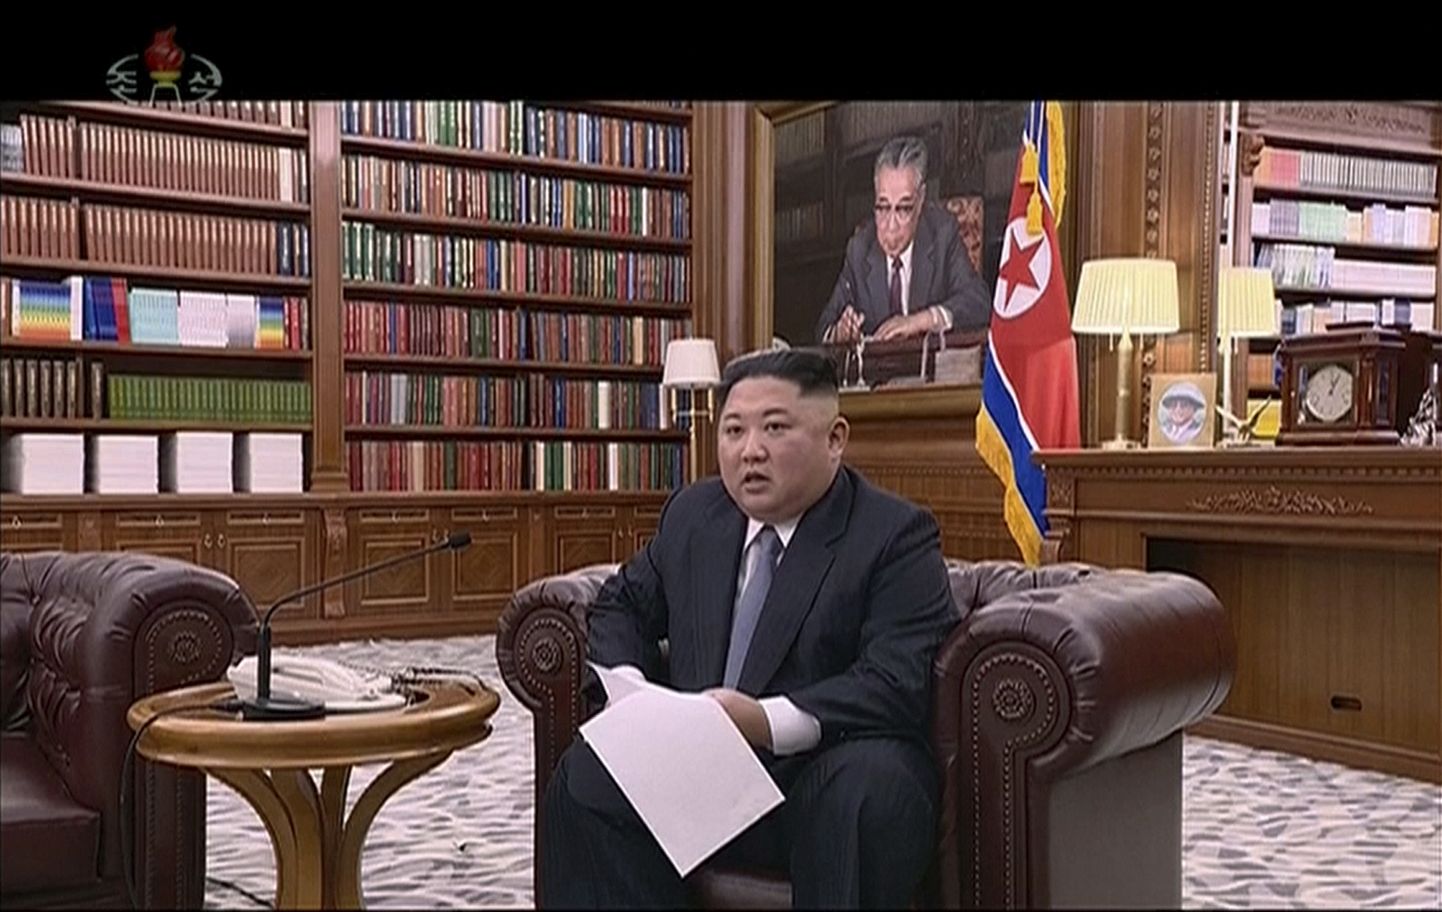 Põhja-Korea liider Kim Jong-un esineb uusaastakõnega.